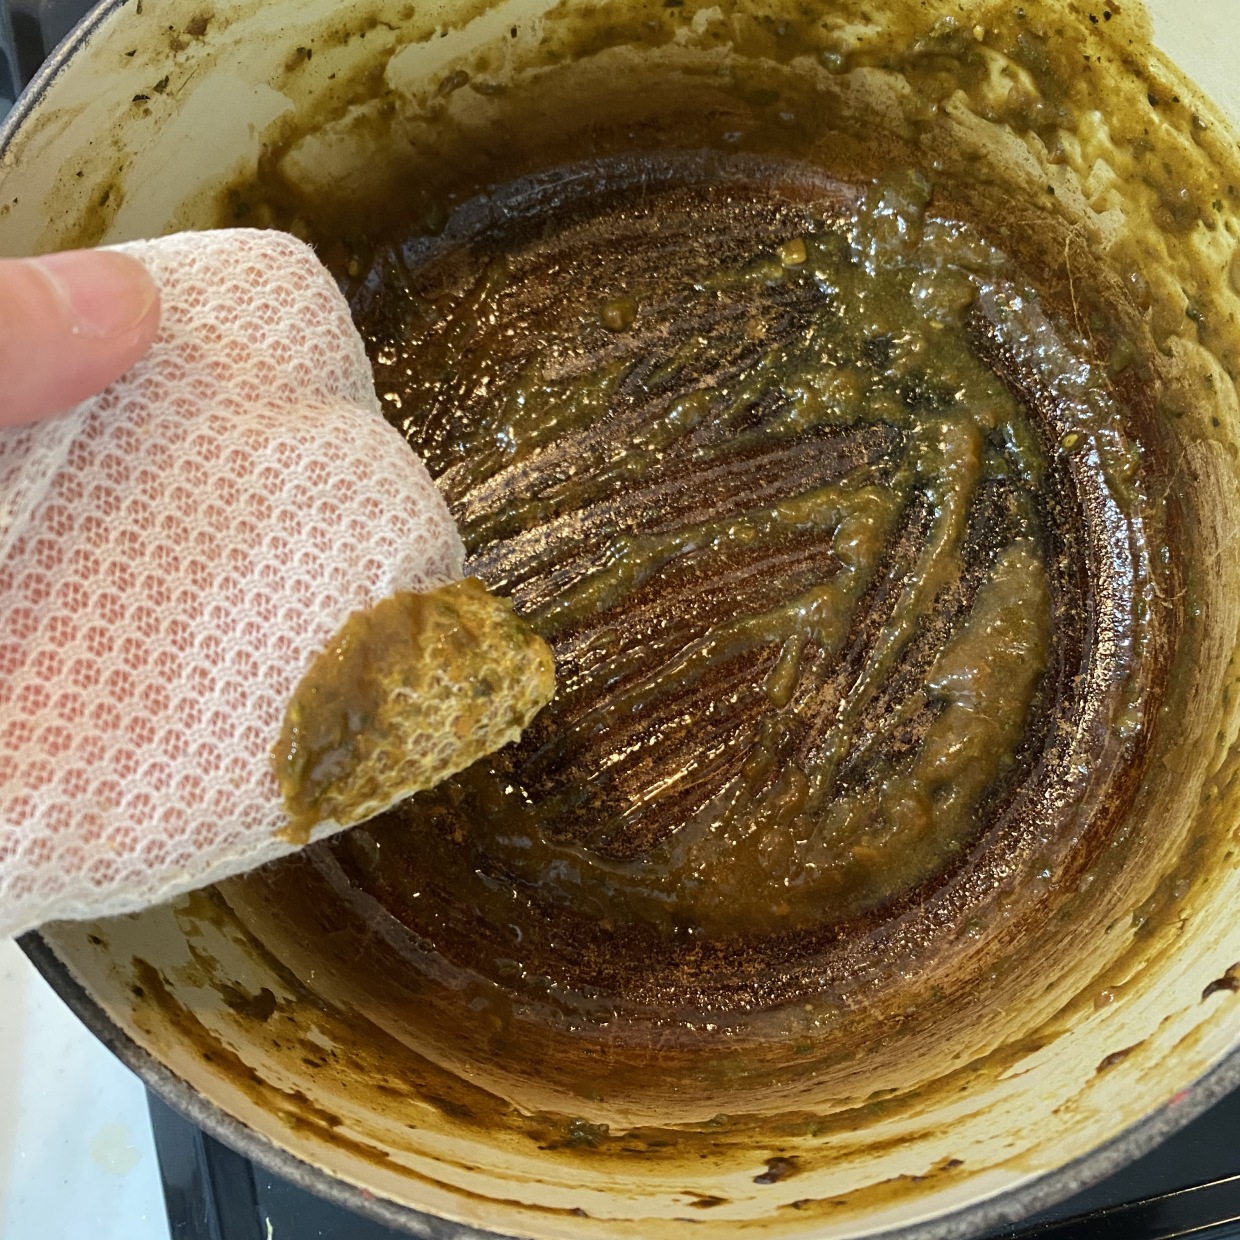  カレーのこびりついた鍋をストレスなく洗う方法3選 